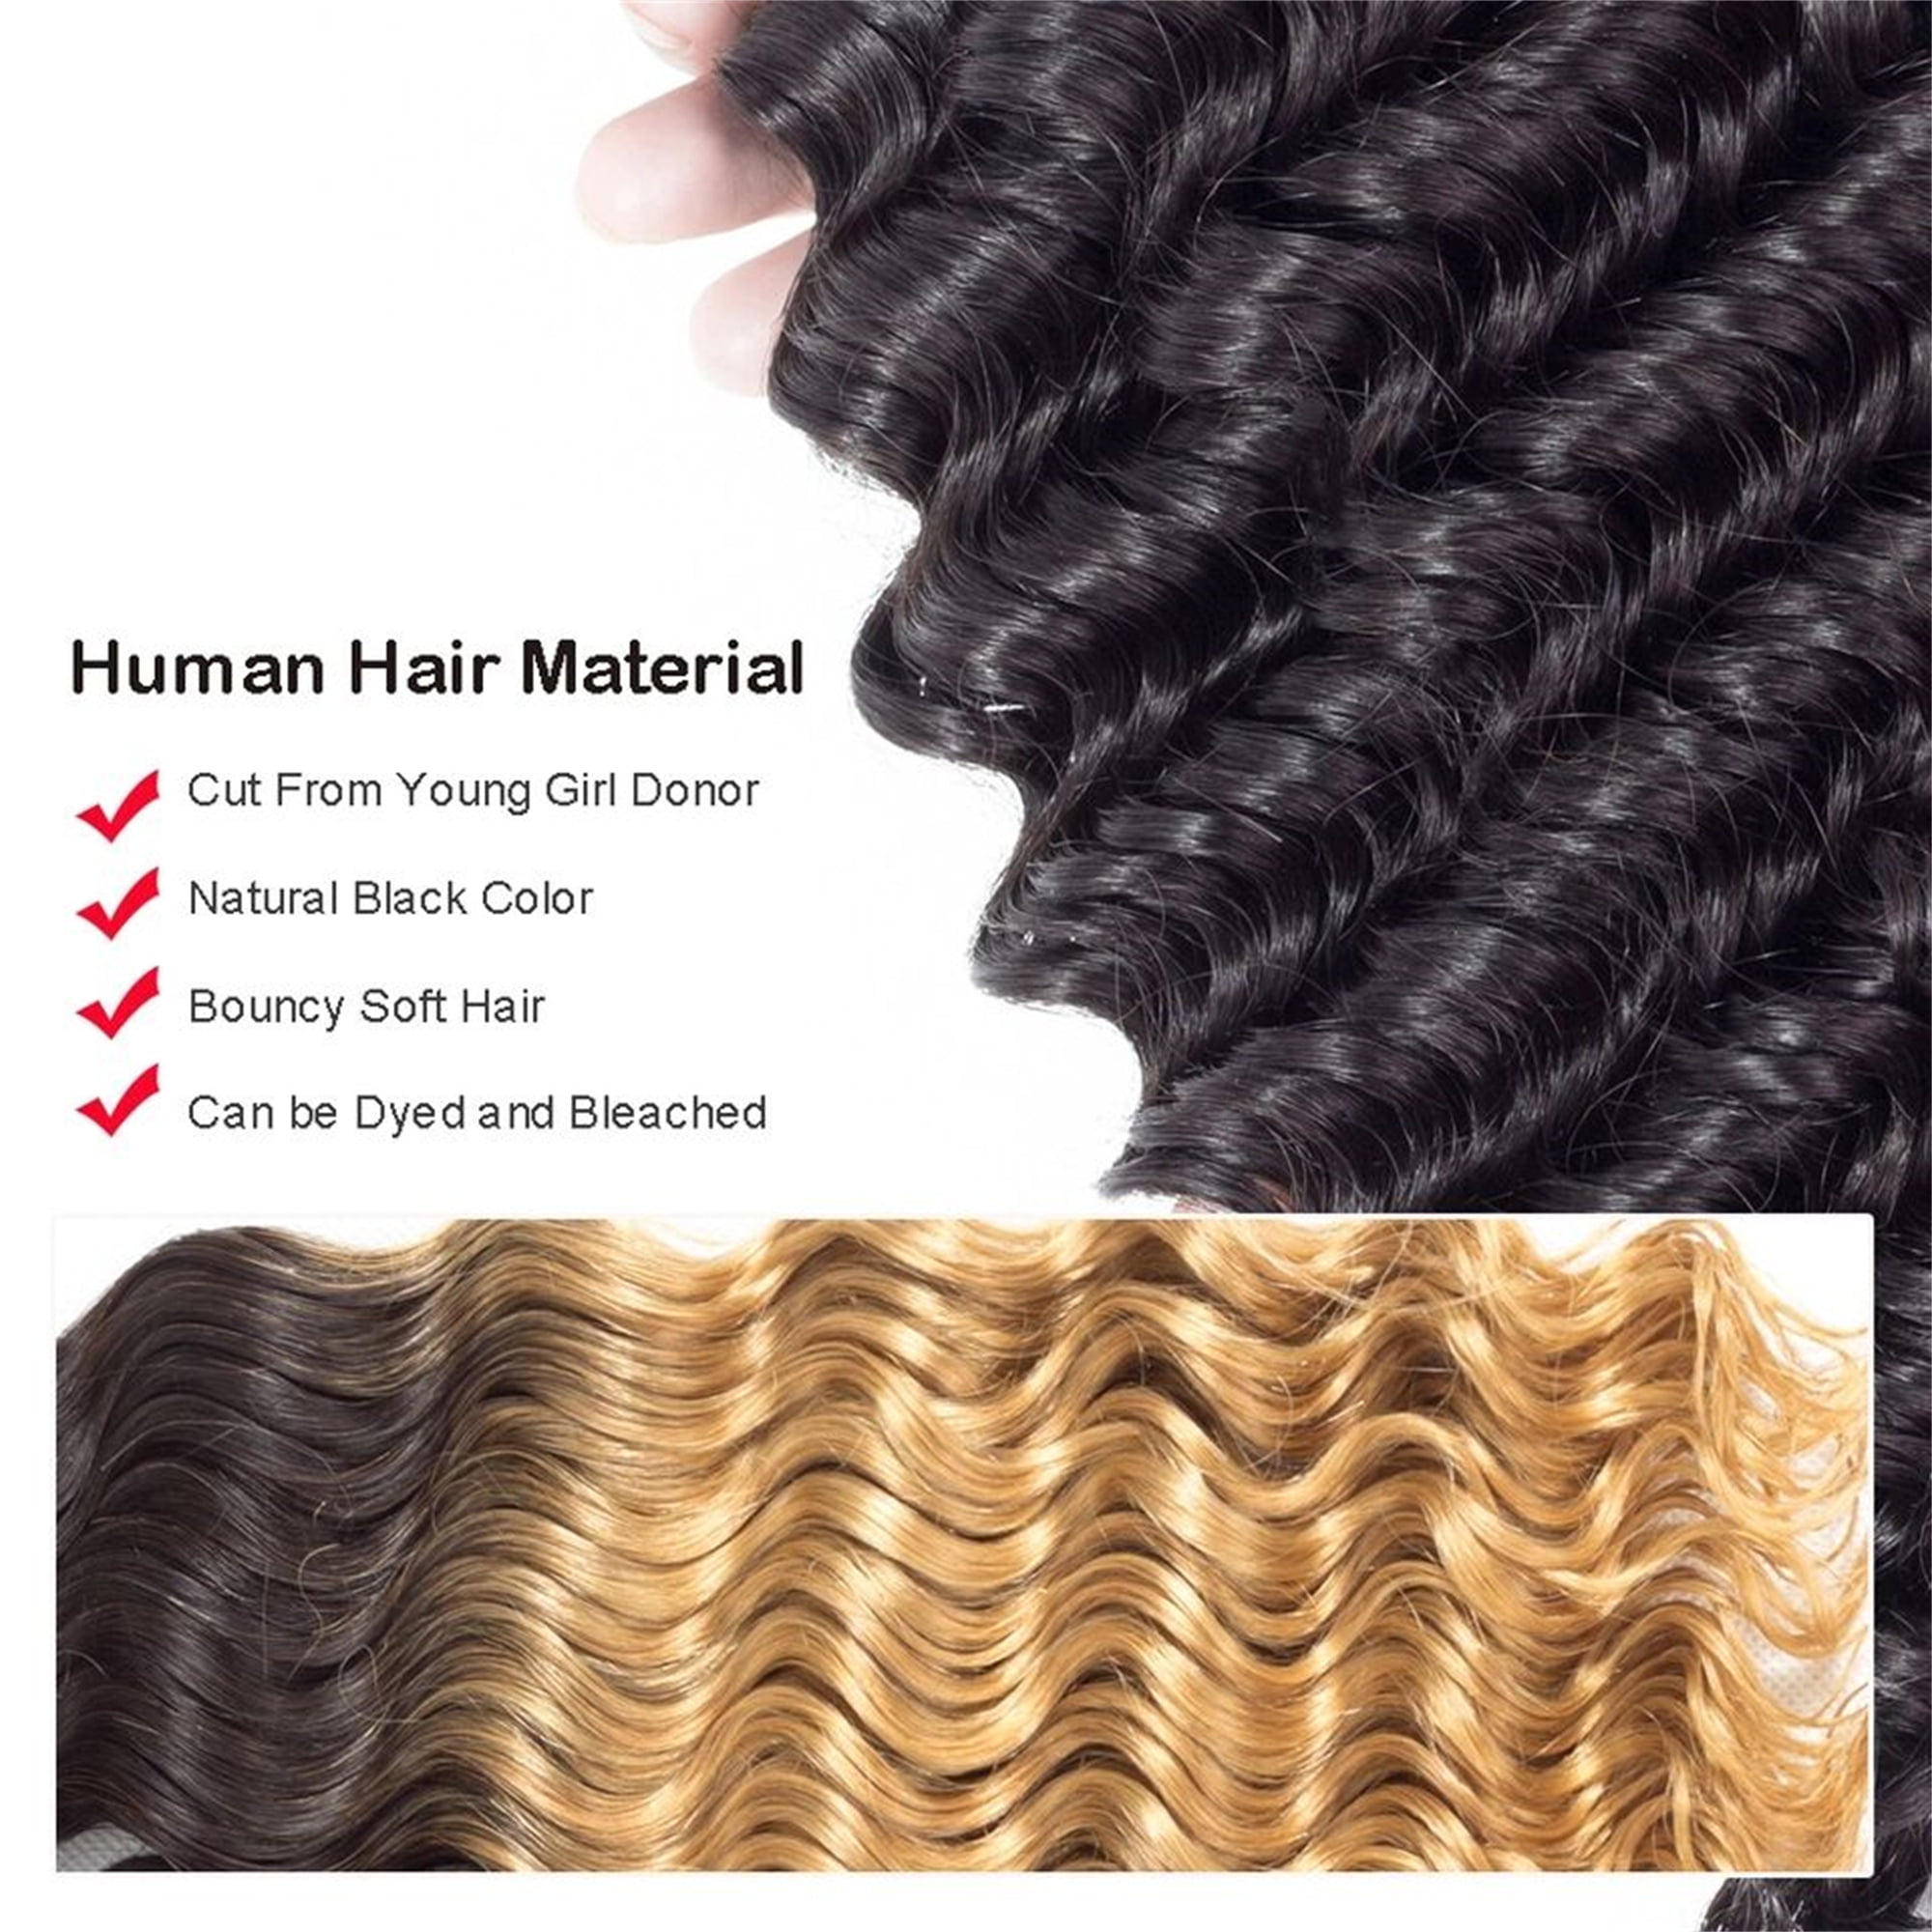 Brazilian Deep Wave Bundles Human Hair Bundles Deep Wave 16”18”20” 3 Bundles Virgin Remy Unprocessed 100 Gram Each Bundle Human Hair Double Weft Natural Color - image 4 of 6